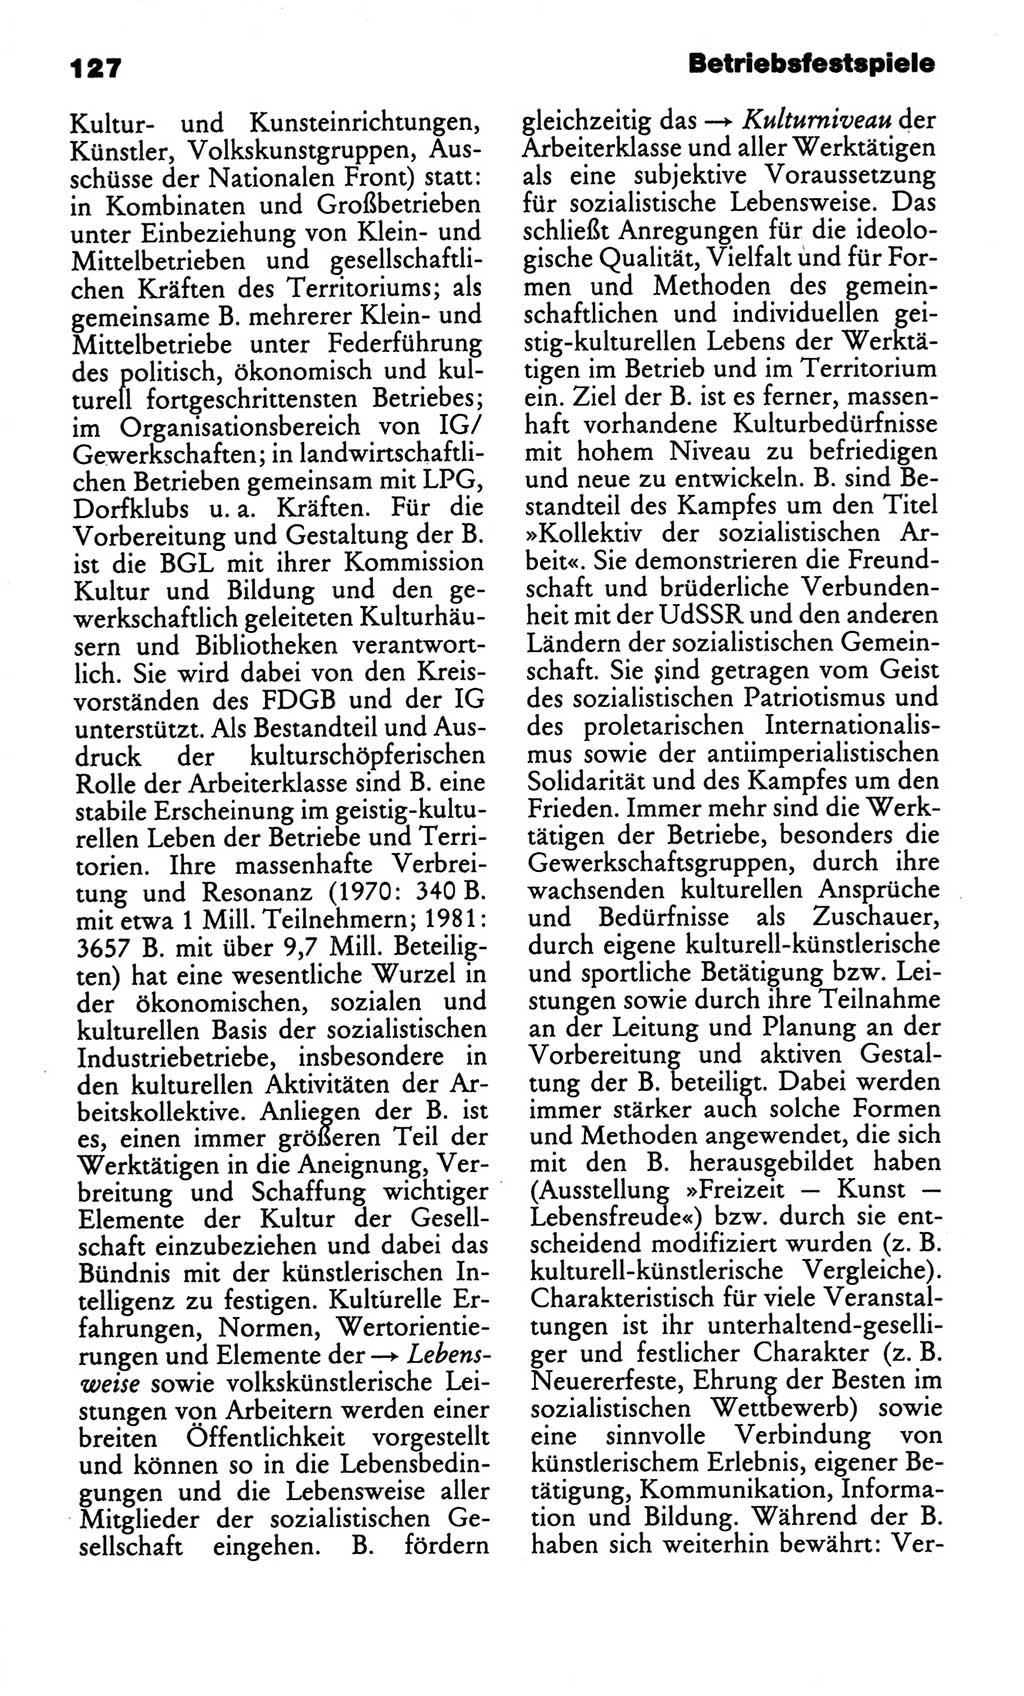 Kleines politisches Wörterbuch [Deutsche Demokratische Republik (DDR)] 1986, Seite 127 (Kl. pol. Wb. DDR 1986, S. 127)